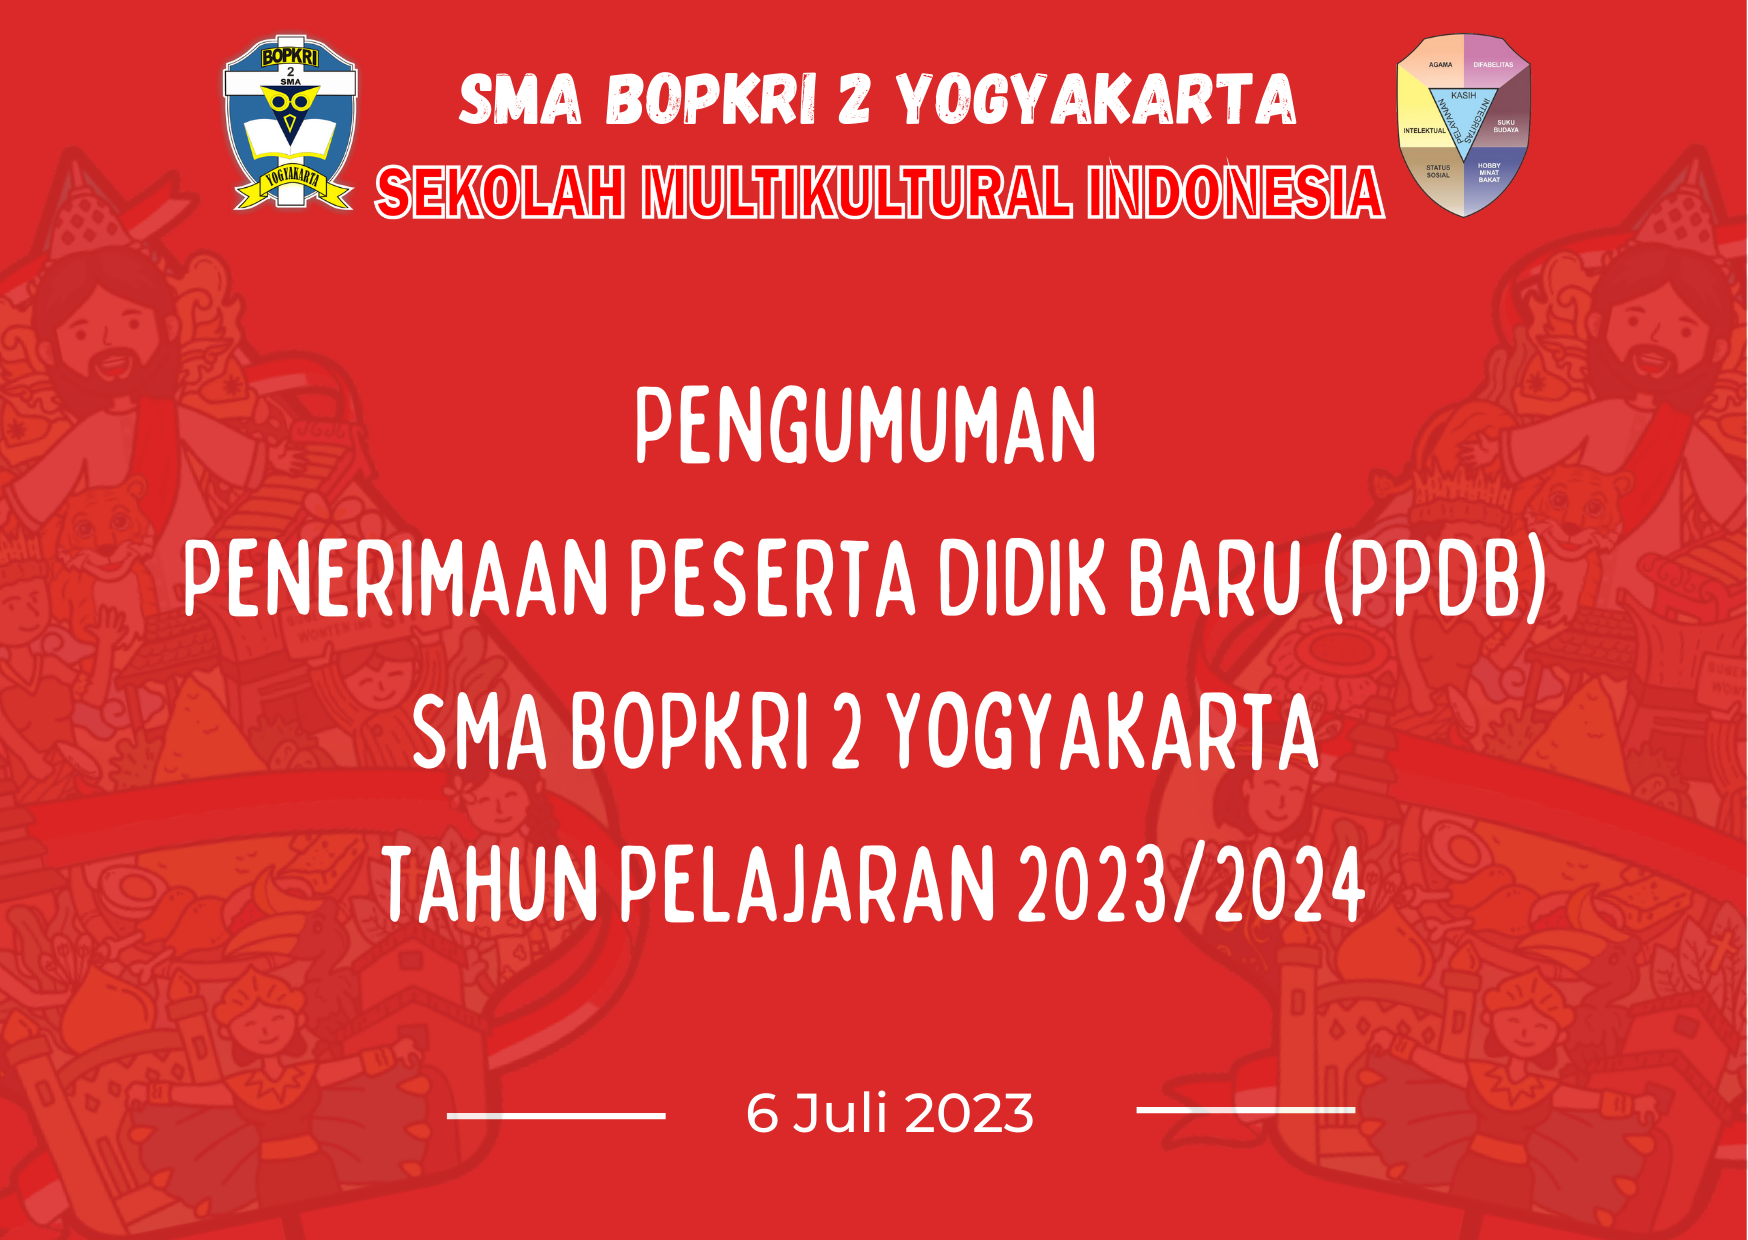 PENGUMUMAN PENERIMAAN PESERTA DIDIK BARU (PPDB) SMA BOPKRI 2 YOGYAKARTA TAHUN PELAJARAN 2023/2024